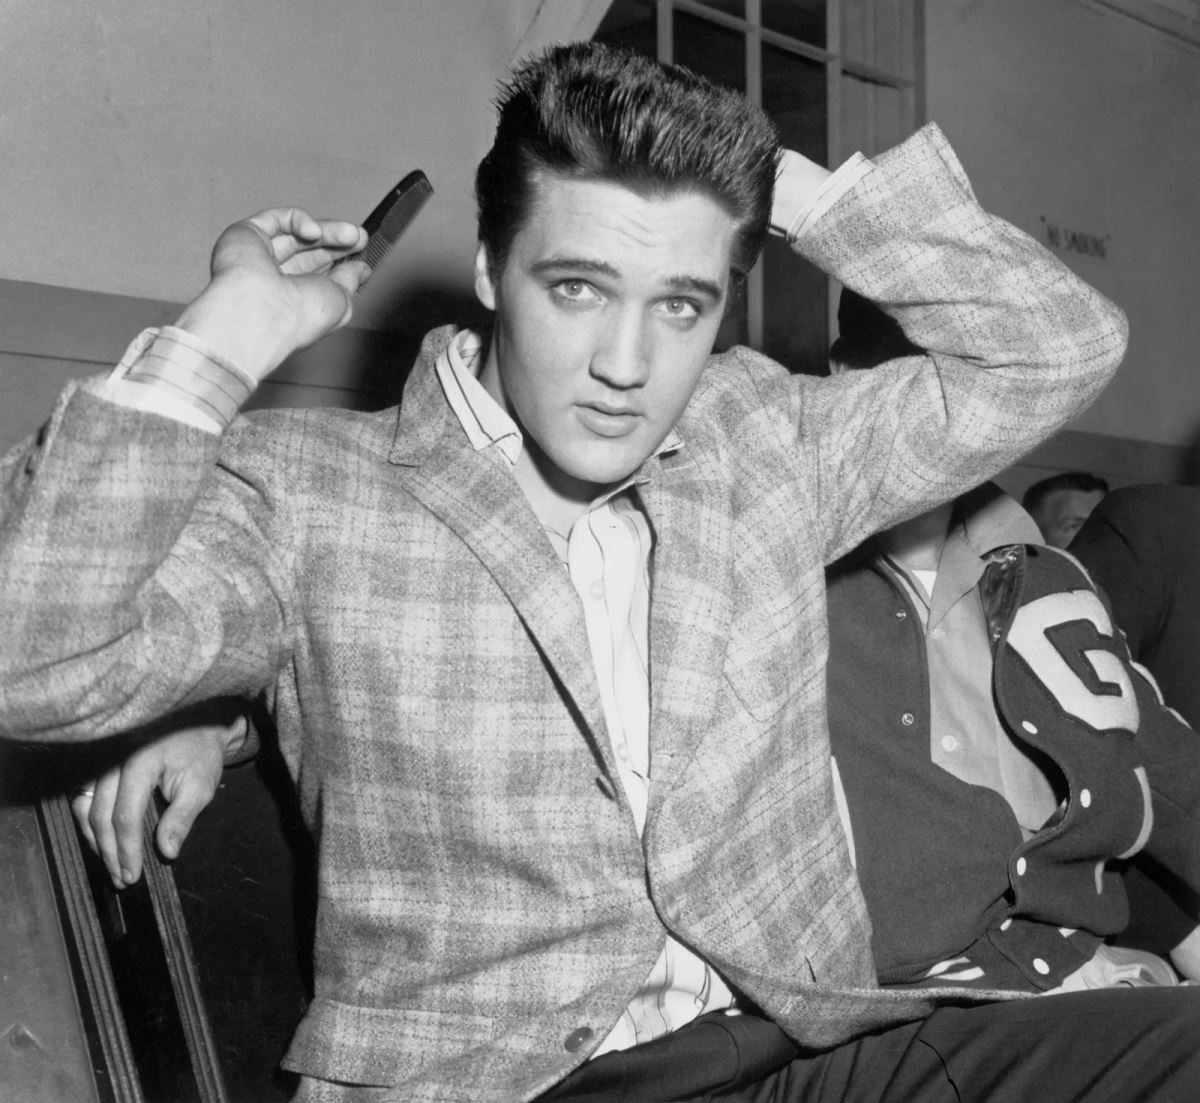 <p><strong>10. Henüz 42 yaşında öldü</strong></p>
<p>Presley, <strong>16 Ağustos 1977'de</strong> henüz <strong>42 yaşında</strong> vefat etti. Şu anda bir müze ve popüler turistik merkez olan Graceland olarak bilinen konakta öldü. Ölüm nedeni resmi olarak kalp krizi olarak belirlendi, ancak birçok kişi bunun uzun süreli uyuşturucu kullanımının sonucu olduğuna inanıyor.</p>